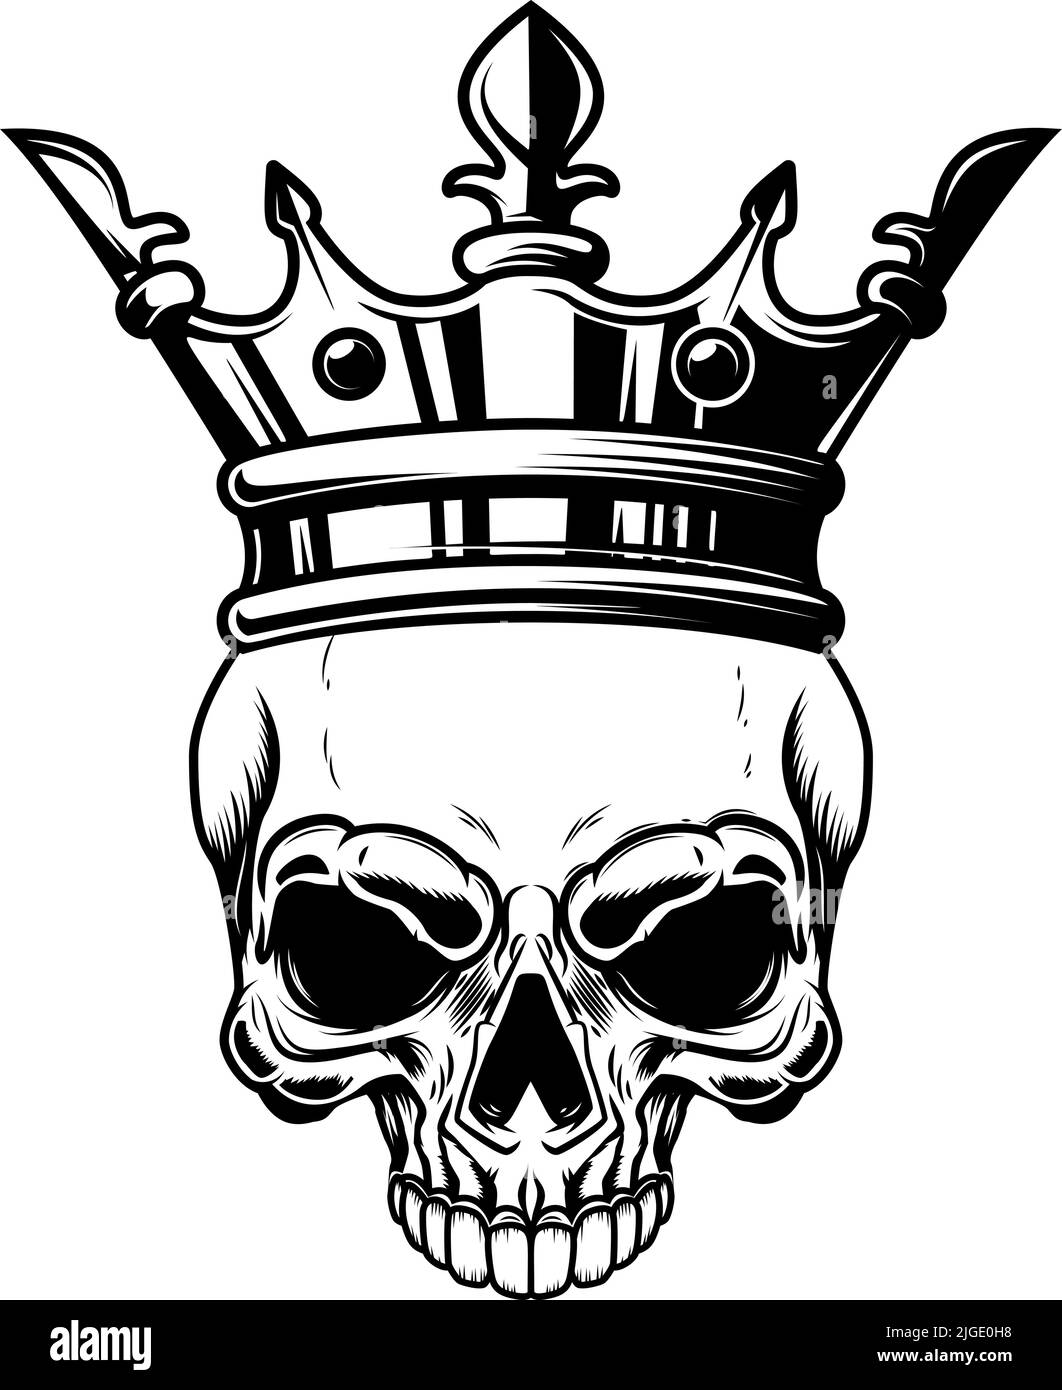 Skull with king crown. Design element for logo, label, sign, emblem ...